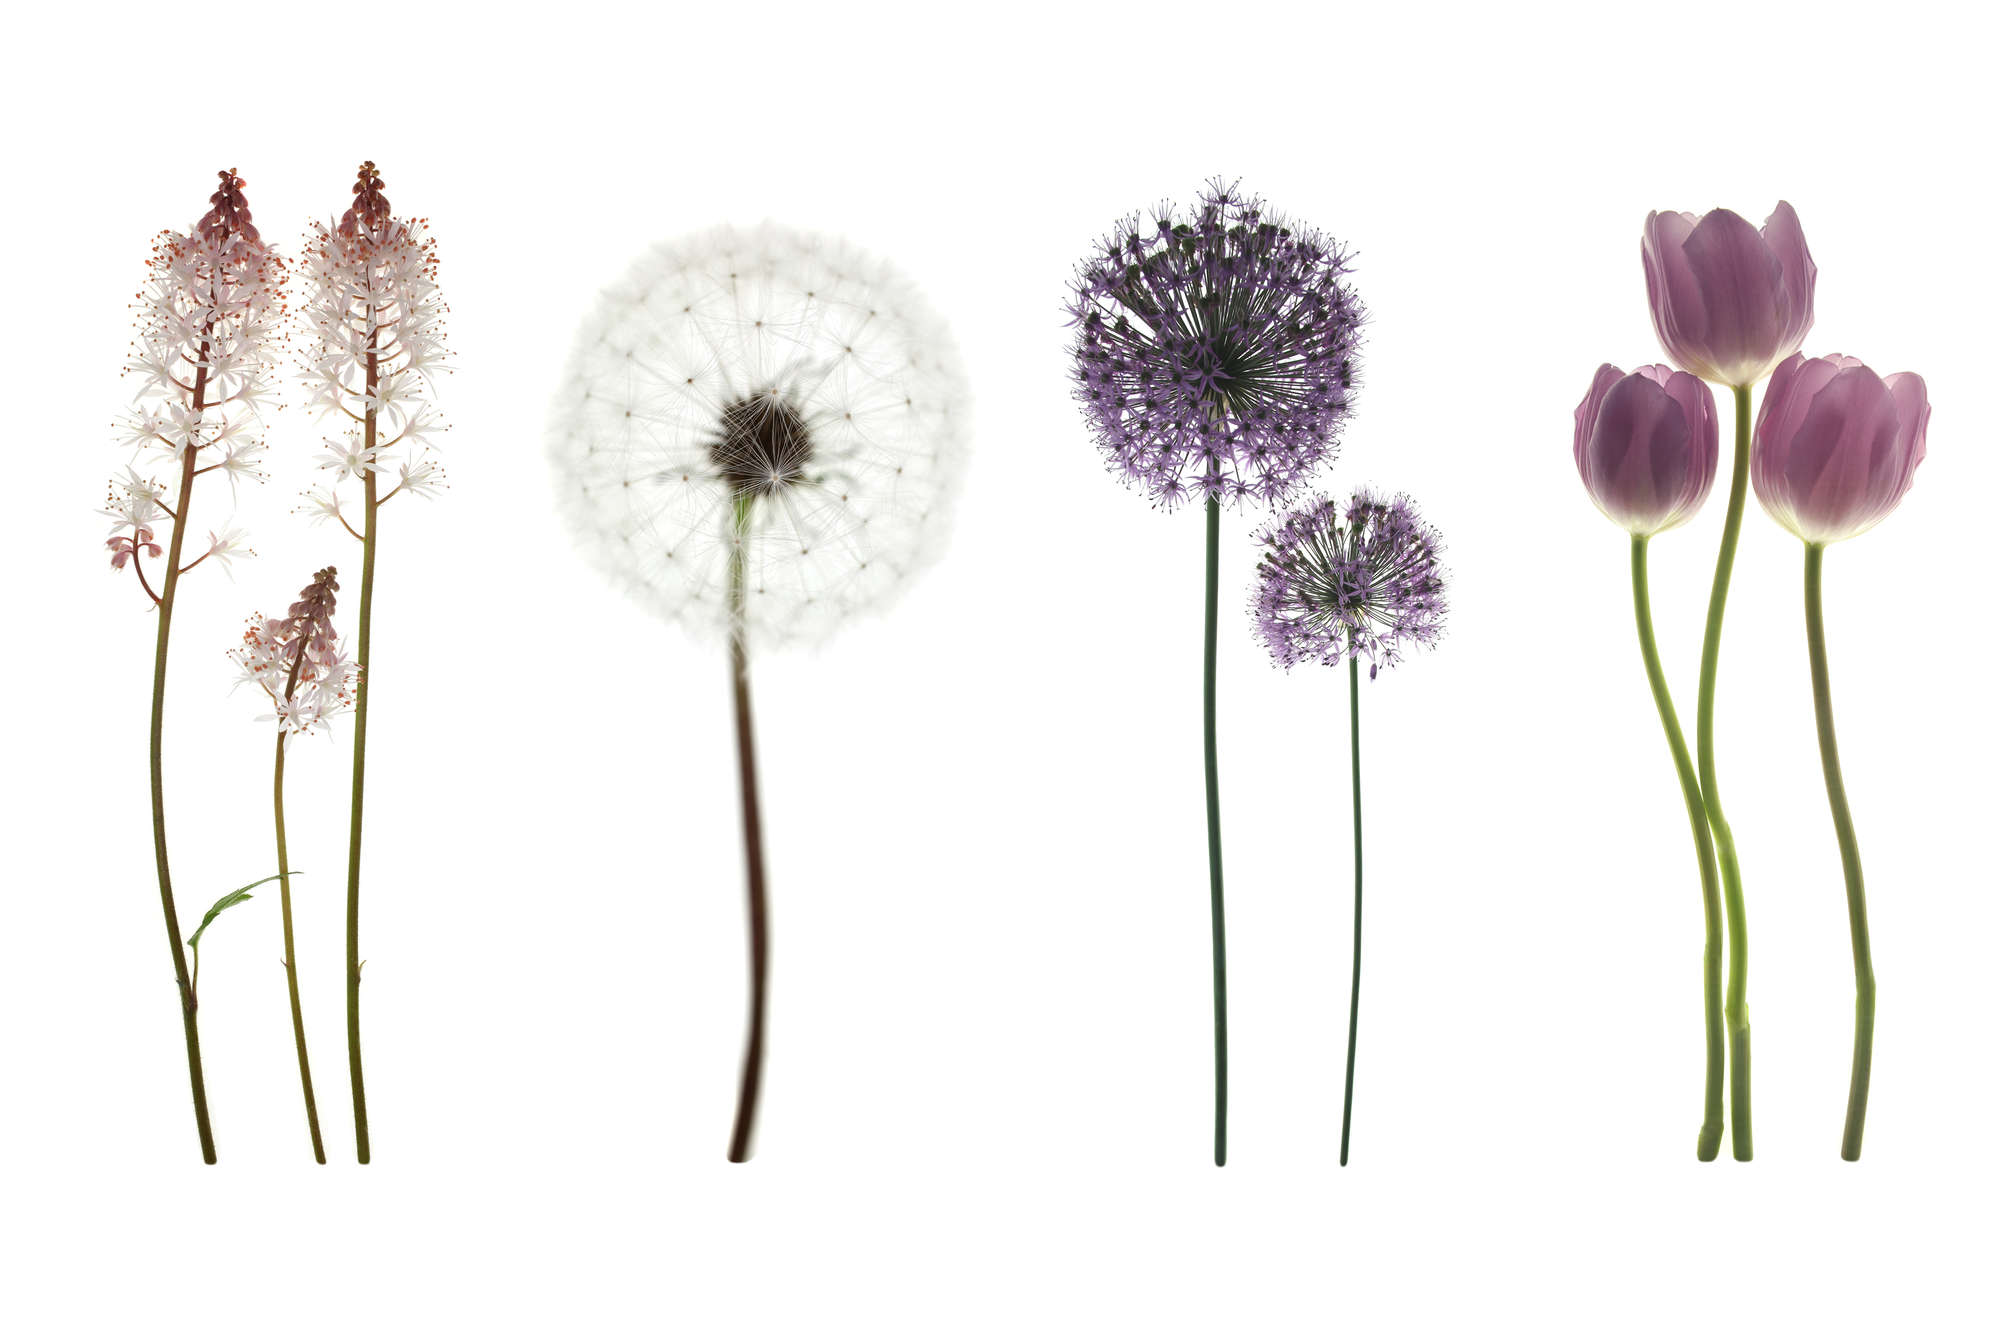             Digital behang met verschillende bloemen - Premium glad vlies
        